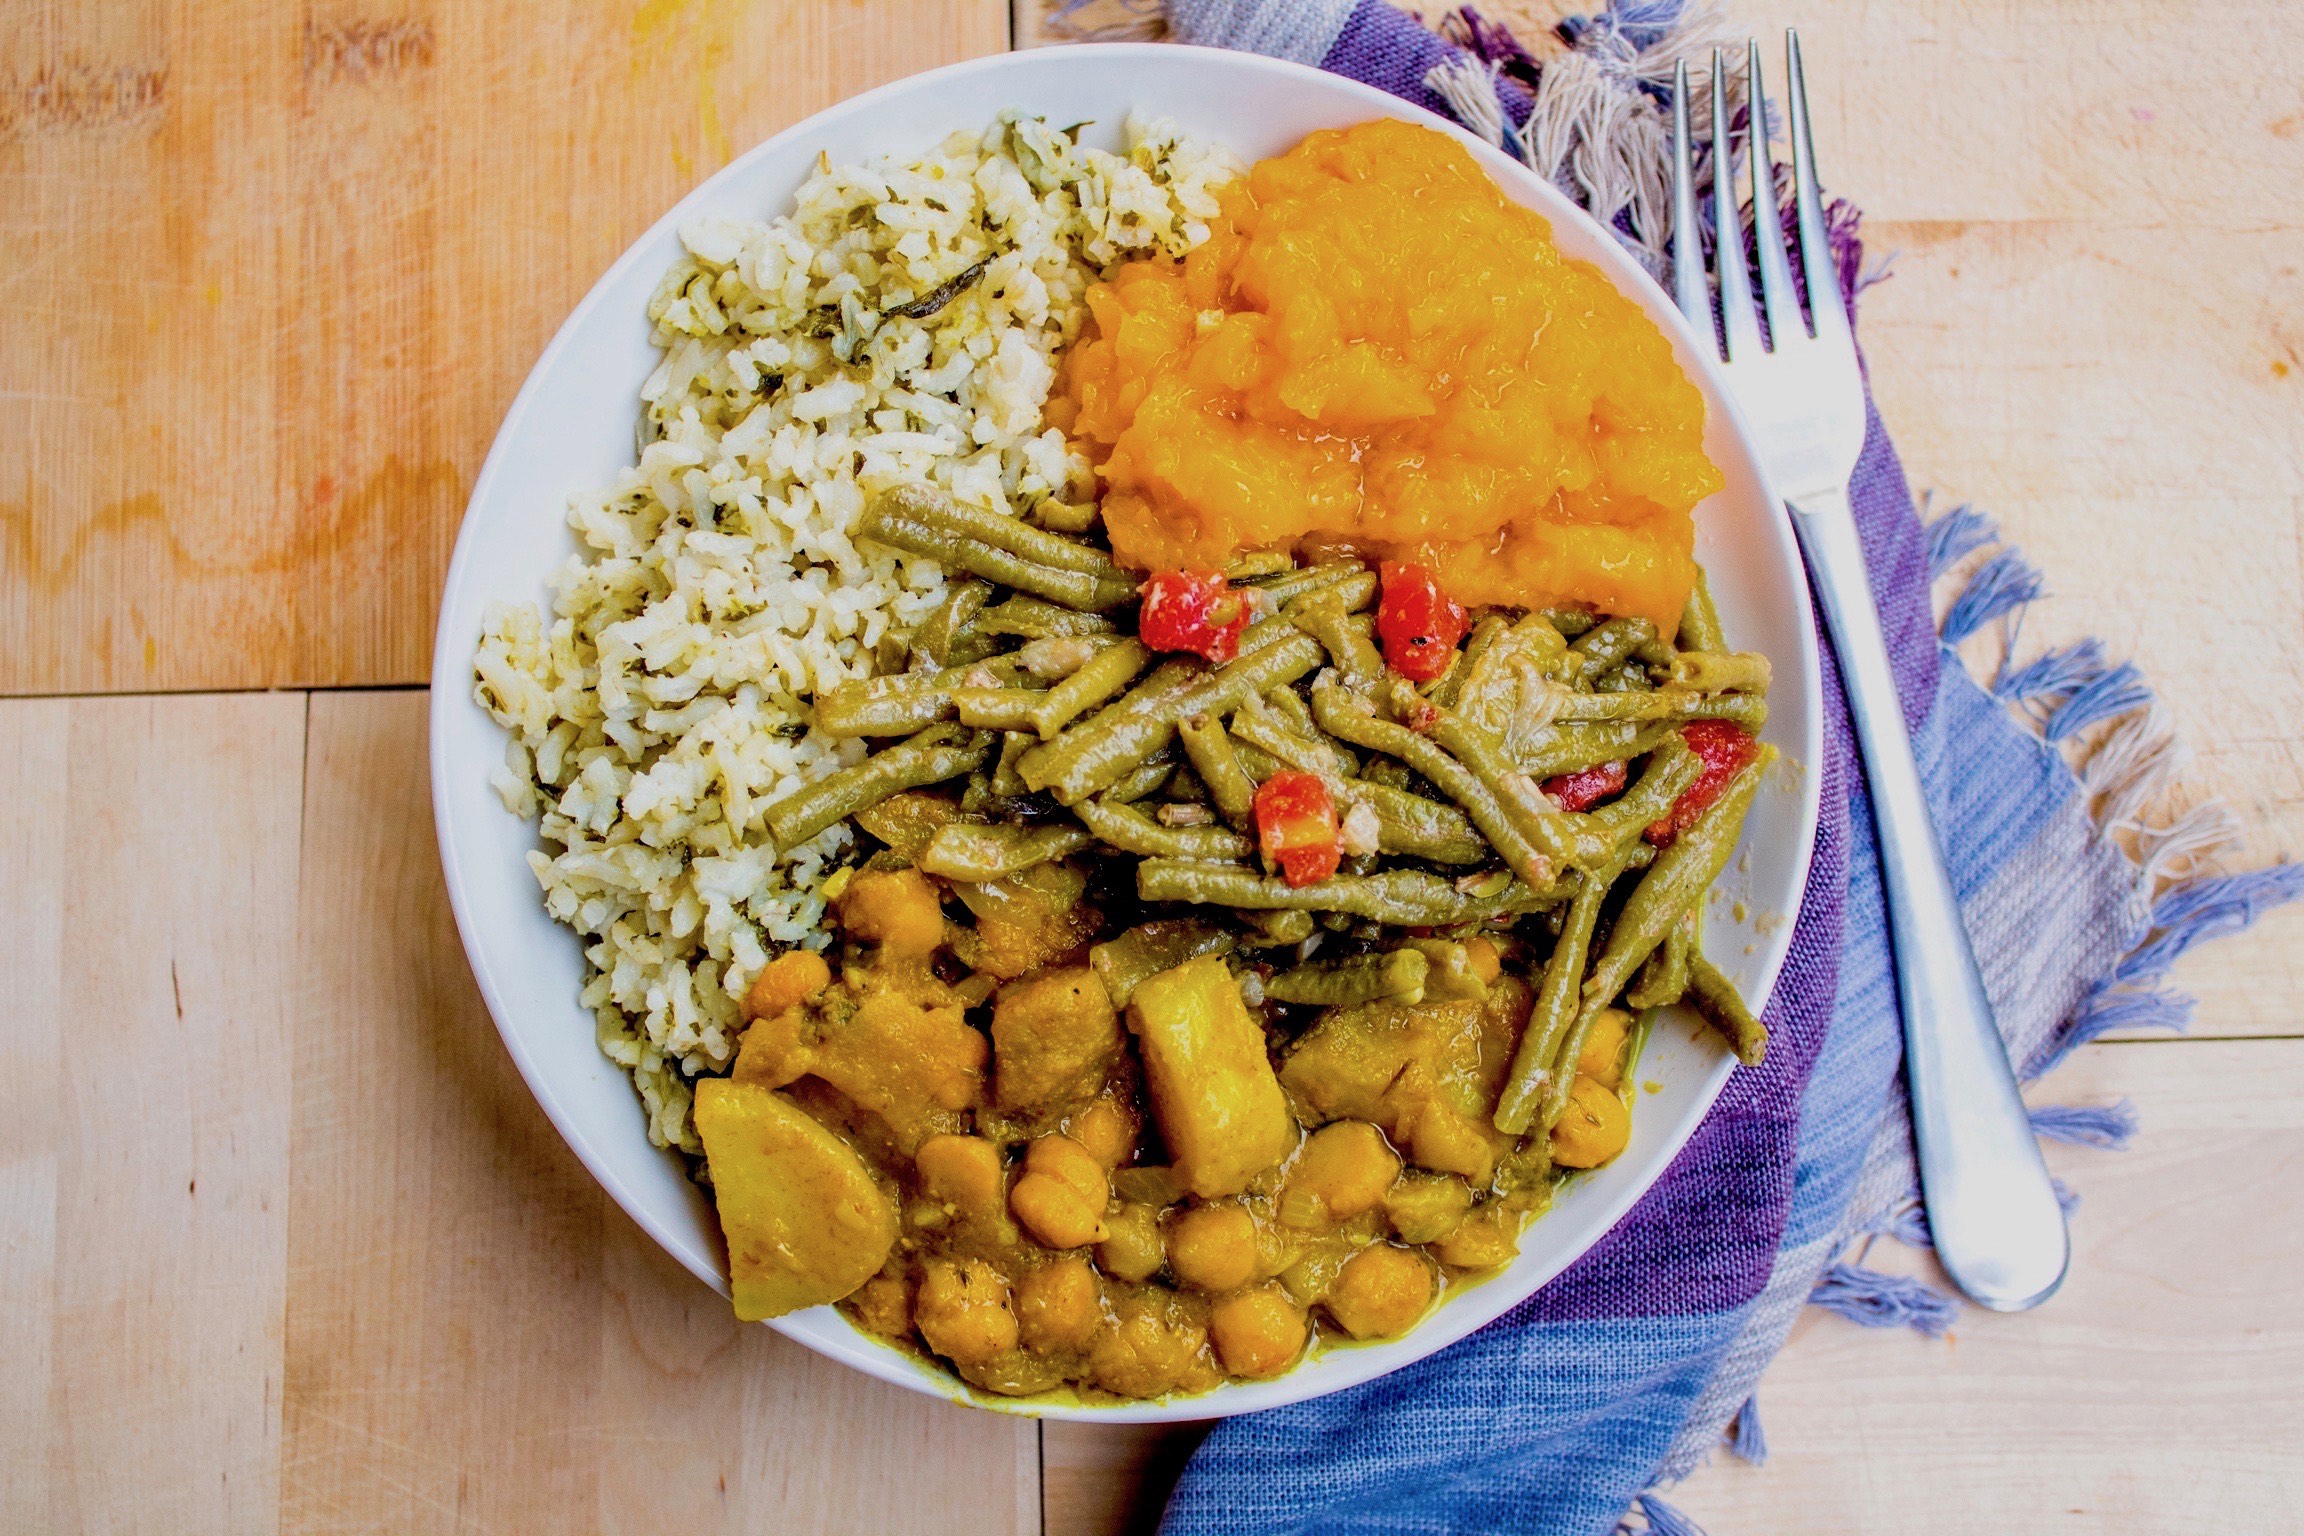 Veggie bowl - Trini style